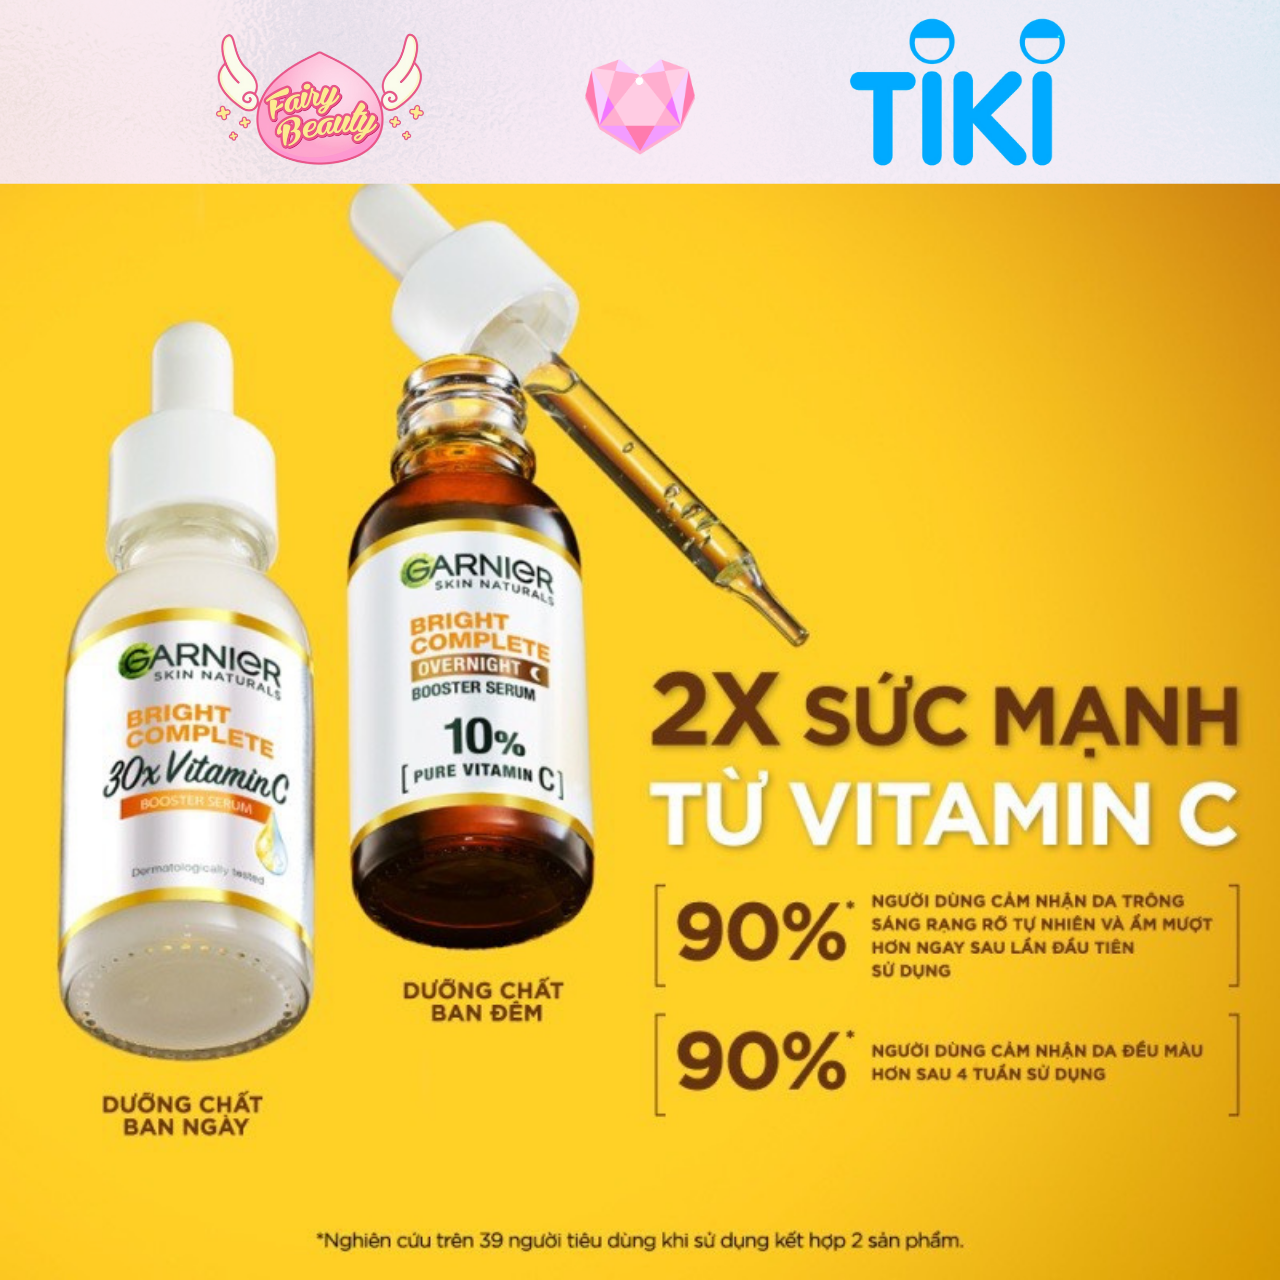 [GARNIER] Tinh Chất Dưỡng Ban Đêm 10% Vitamin C Giúp Làm Sáng Da Bright Complete Overnight 10% Pure Vitamin C 30ml